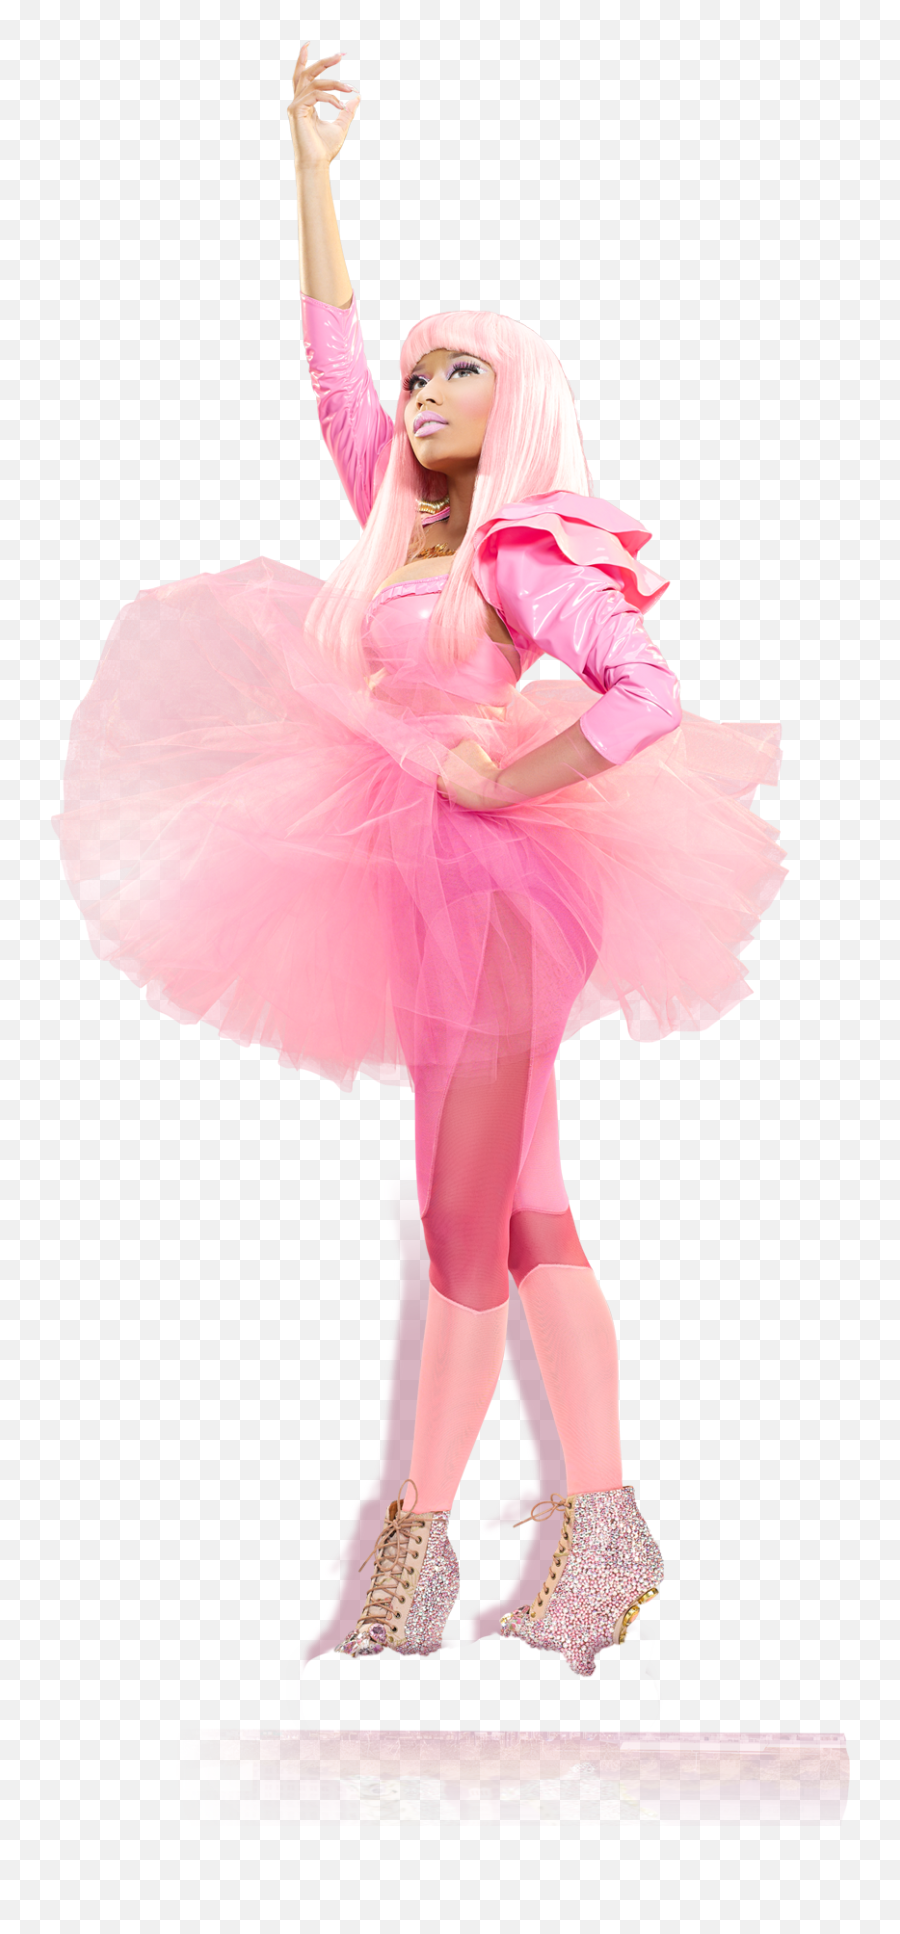 Pink Friday By Nicki Minaj - Nicki Minaj Pink Friday Outfit Png,Nicki Minaj Png